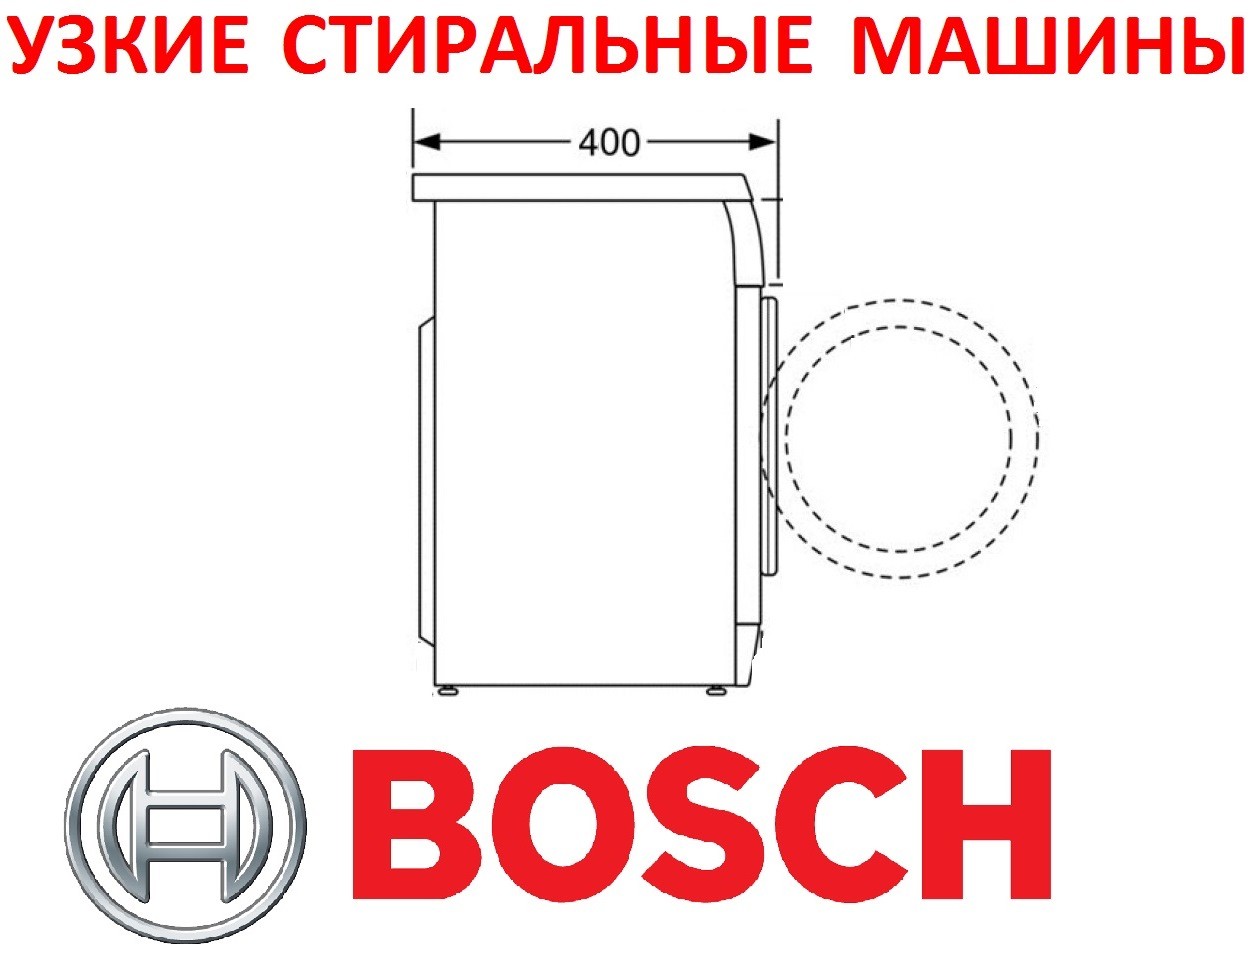 Bosch smal sluitringen aan de voorzijde